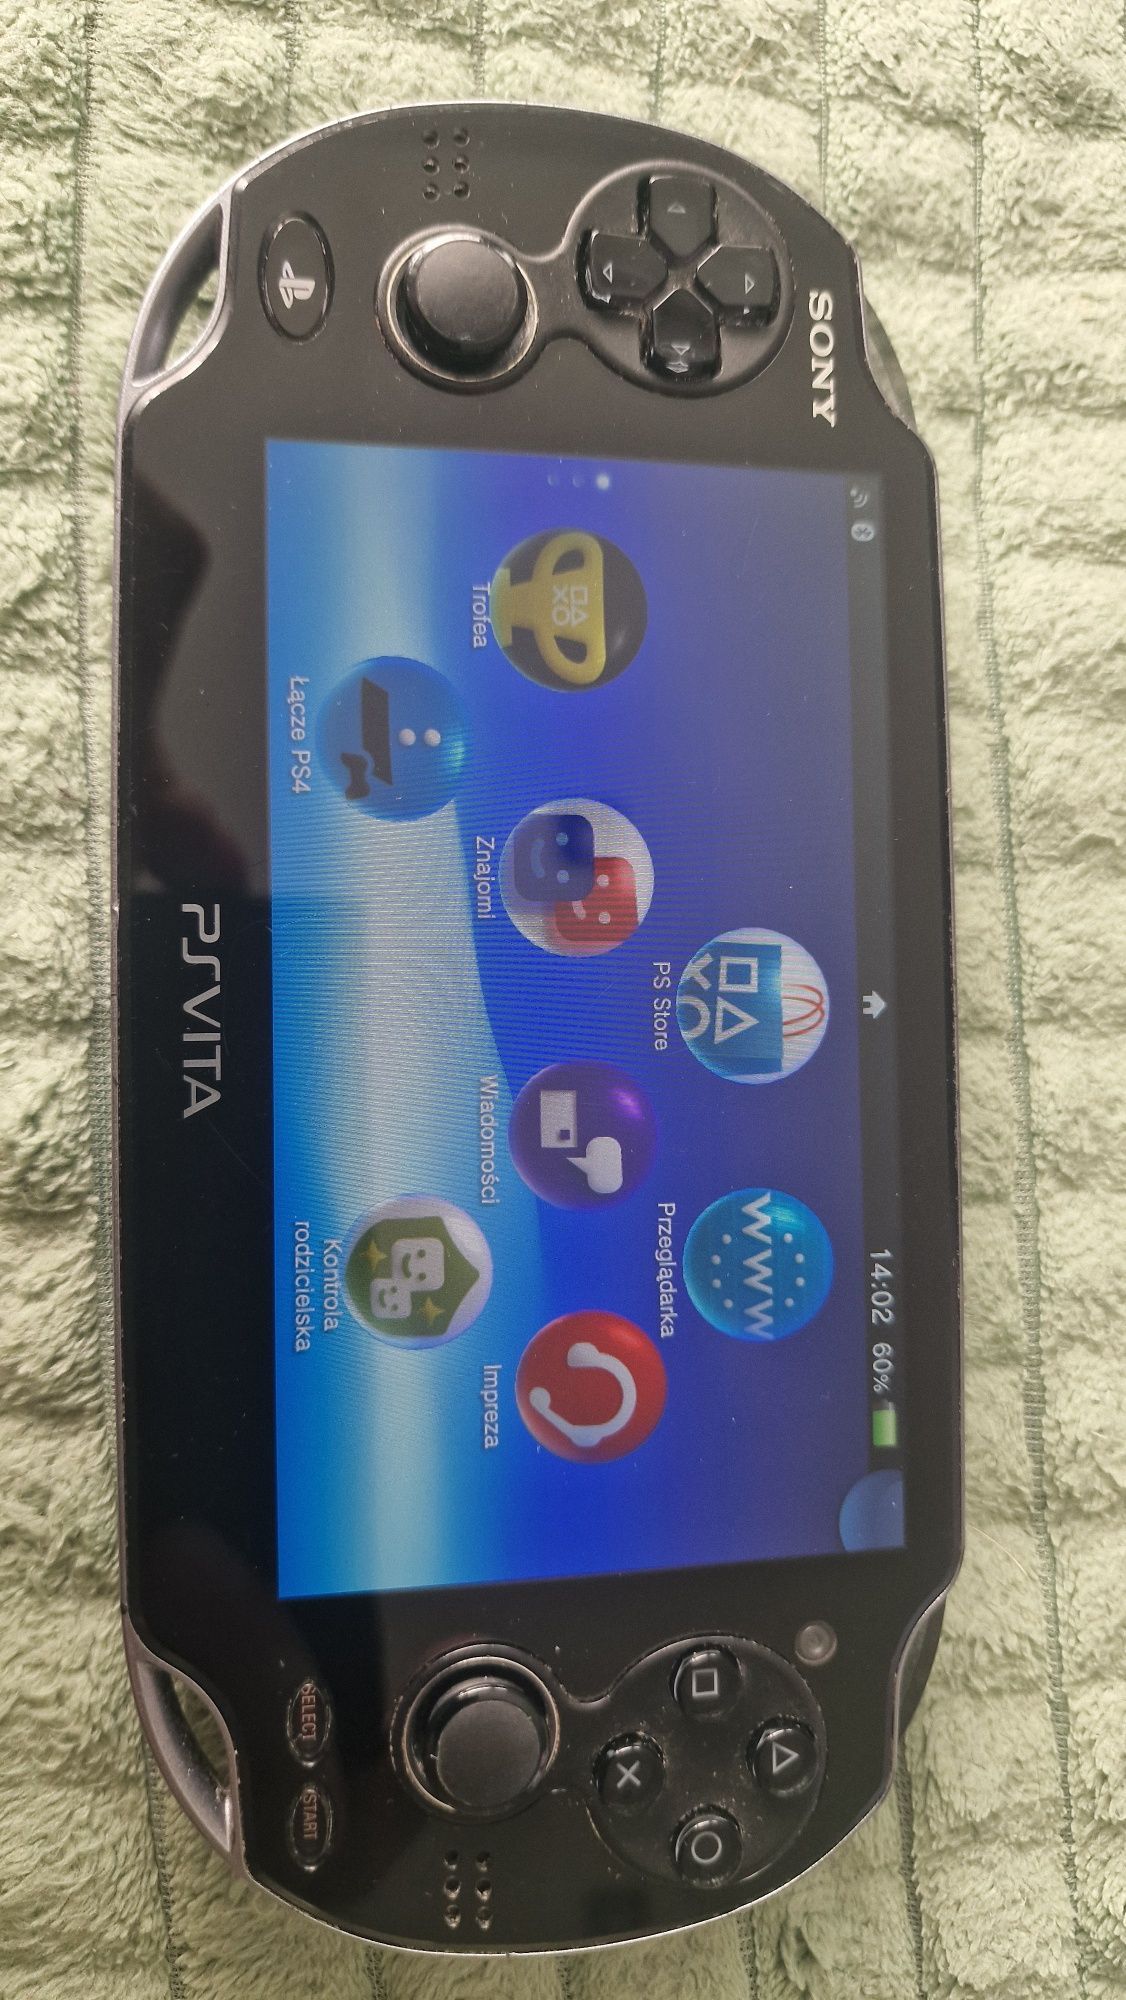 Playstation Vita PCH-1004 OLED CFW 8gb sd